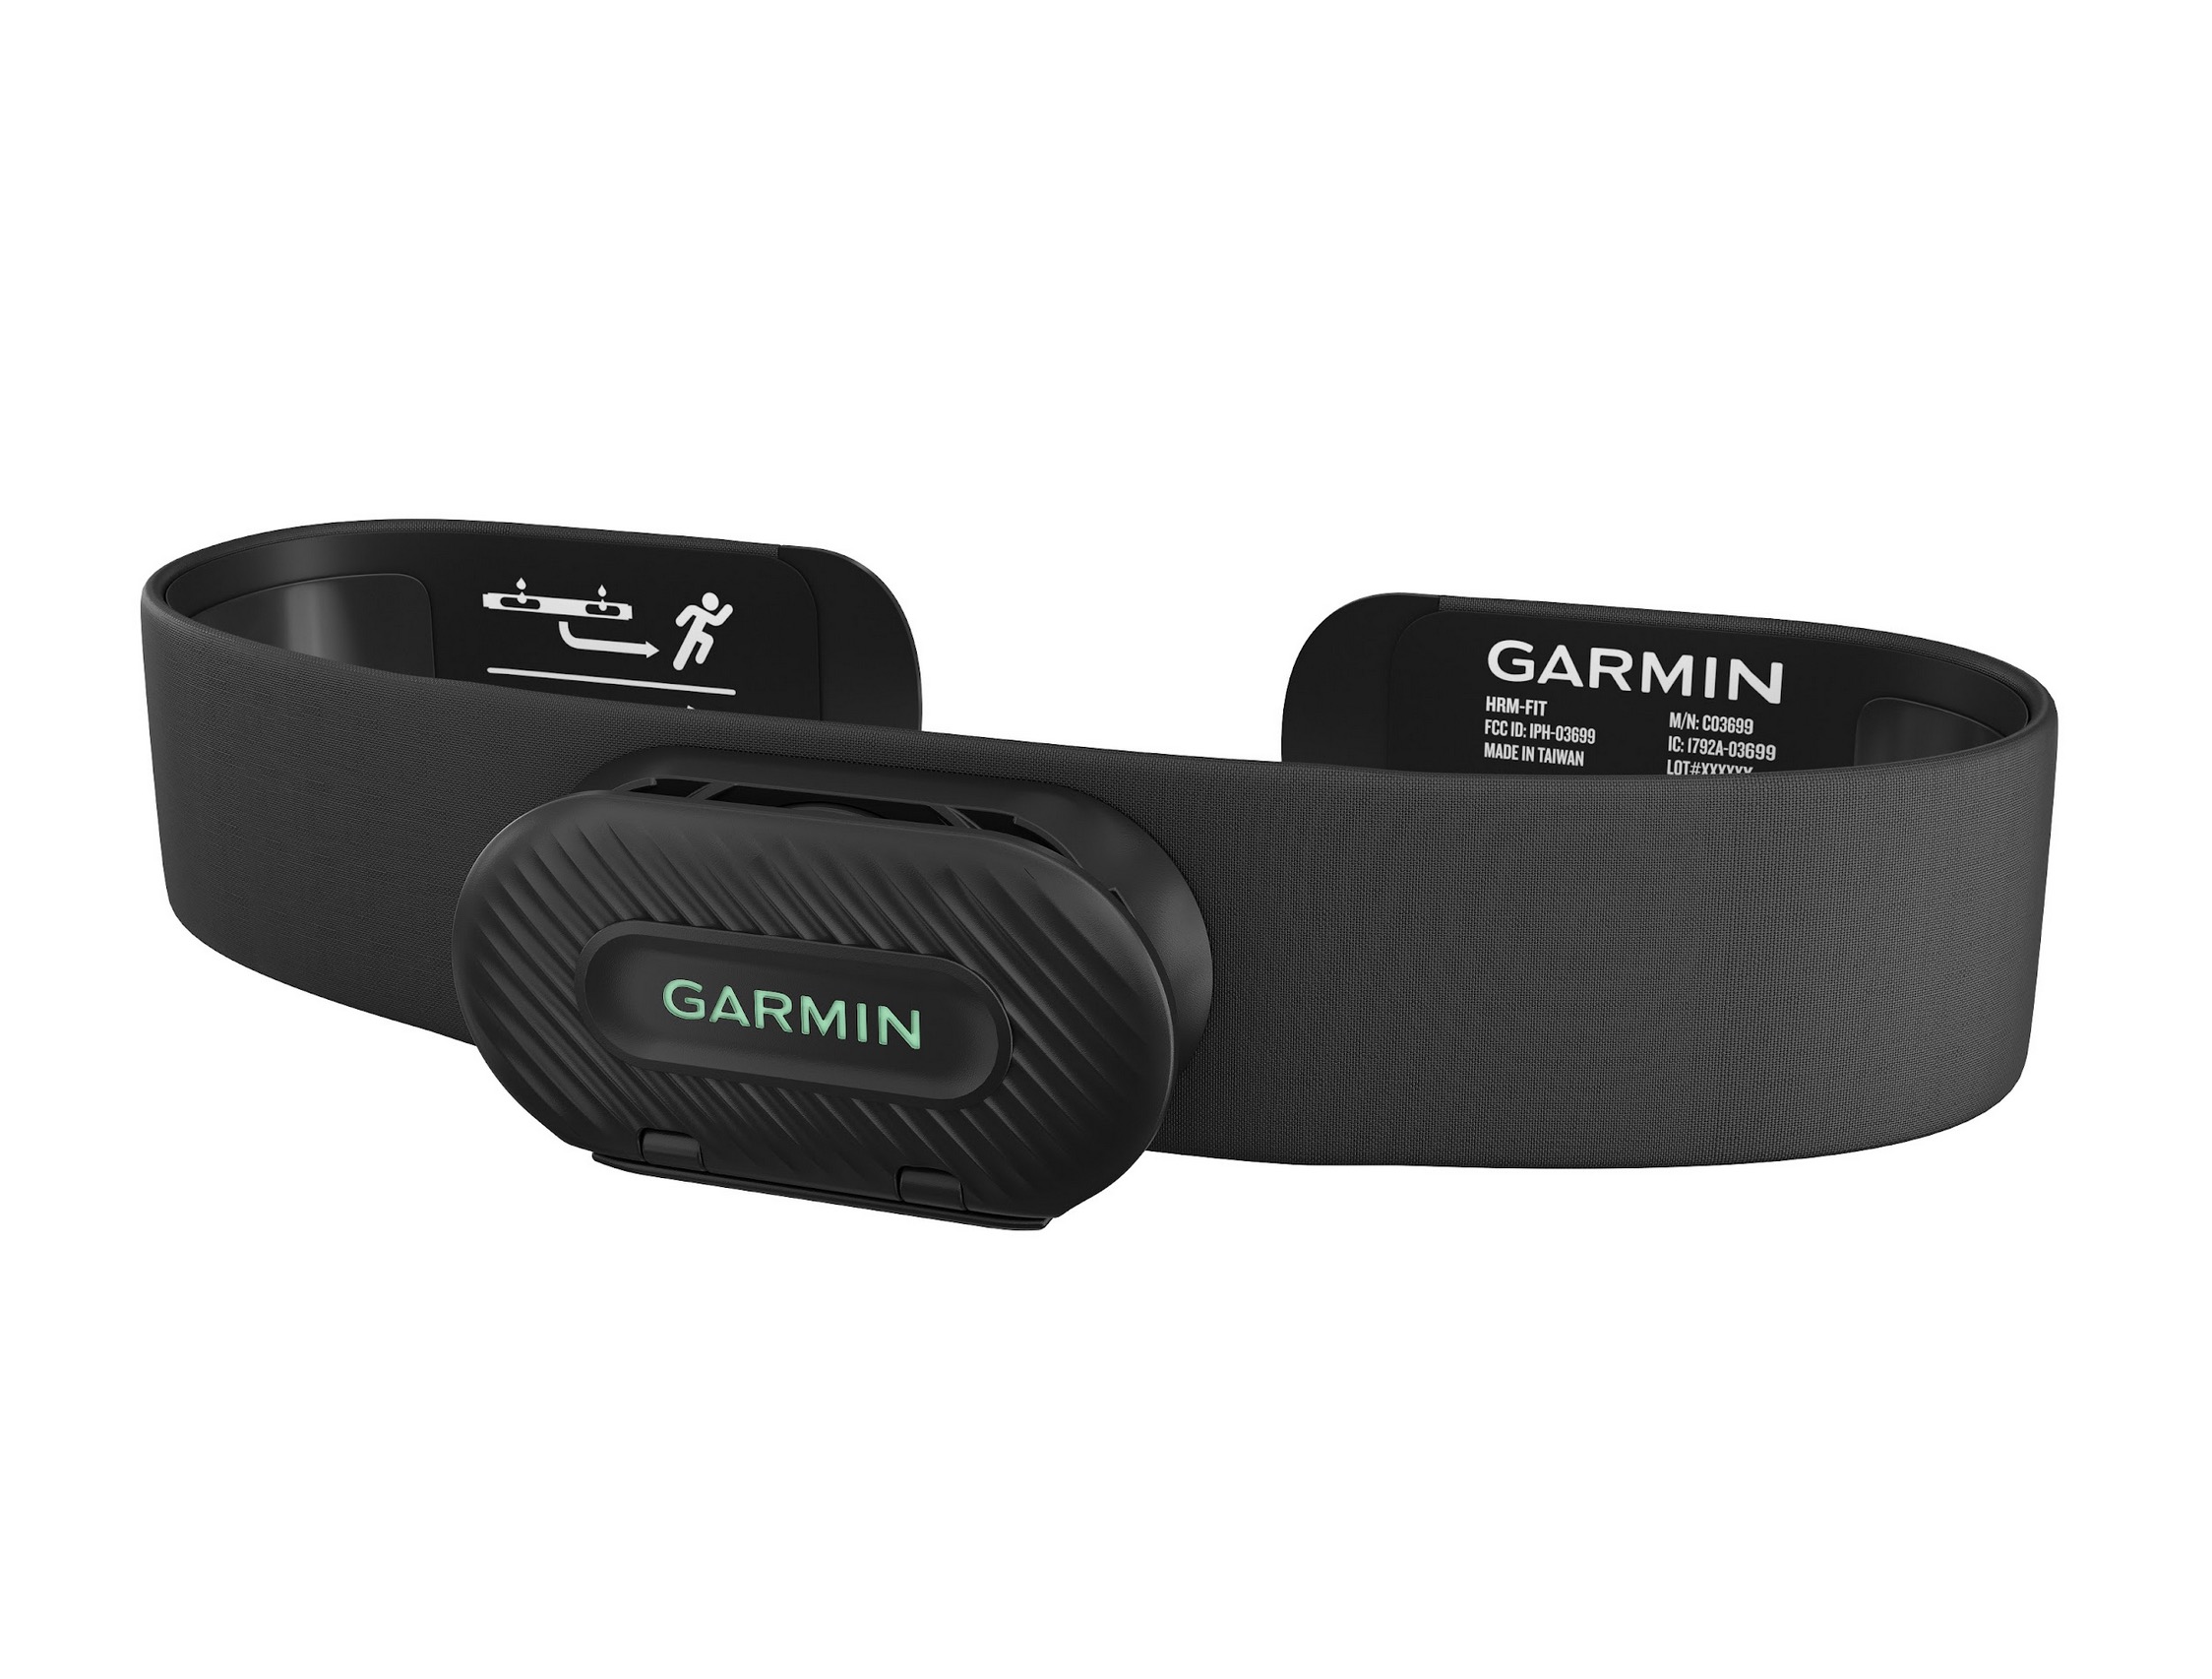 Garmin công bố giải chạy Longbien Garmin Run kèm bộ đôi đồng hồ Forerunner 165 Series và cảm biến nhịp tim HRM-Fit mới- Ảnh 9.